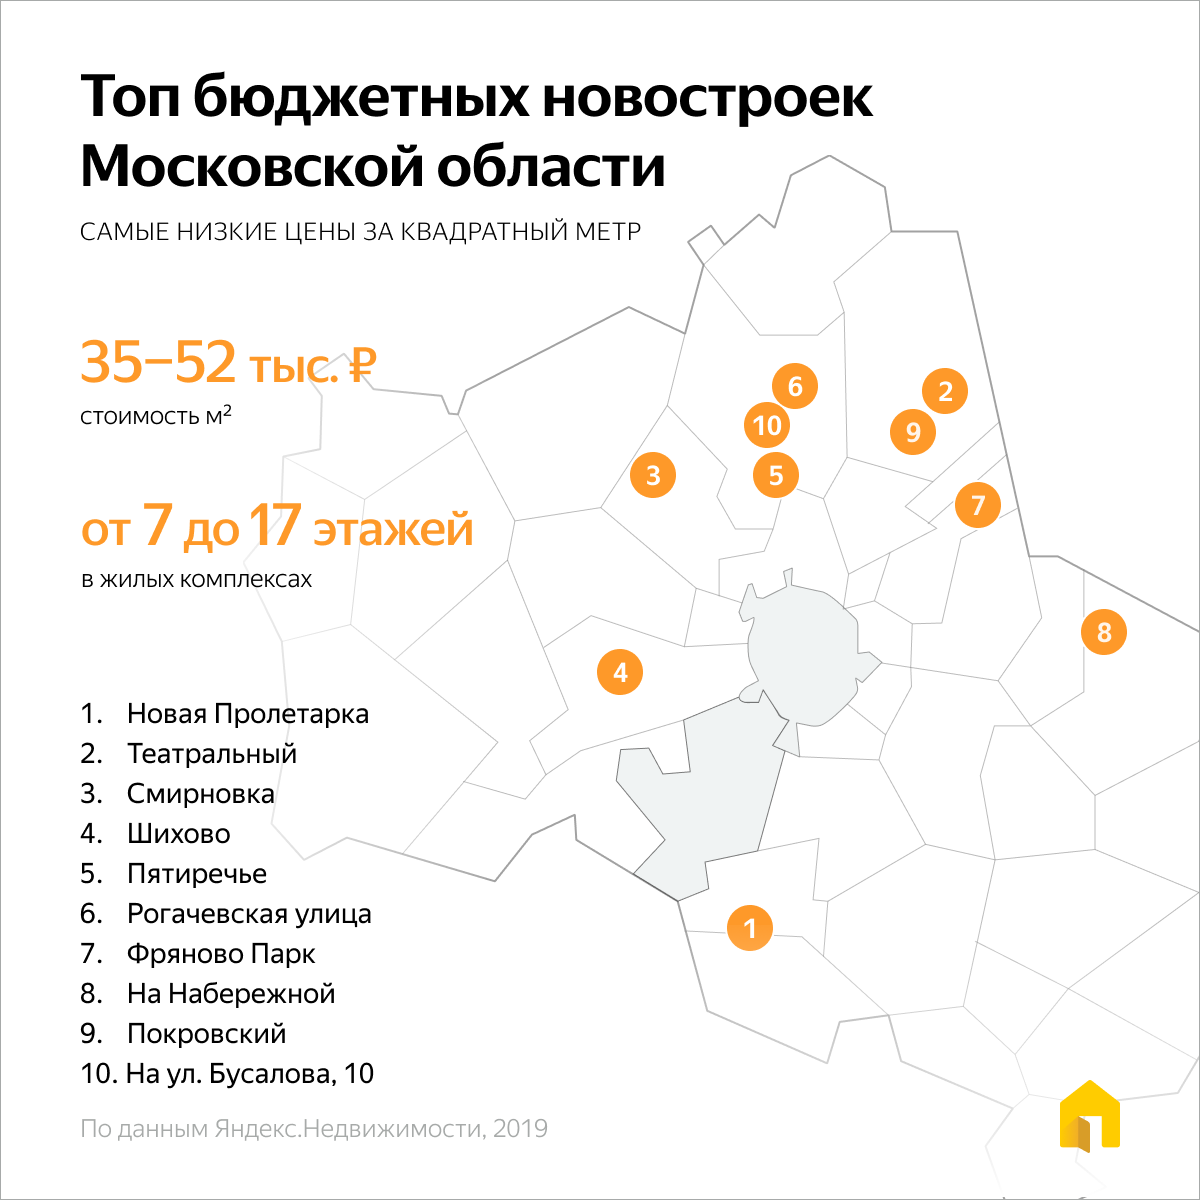 Недвижимость в москве и московской области